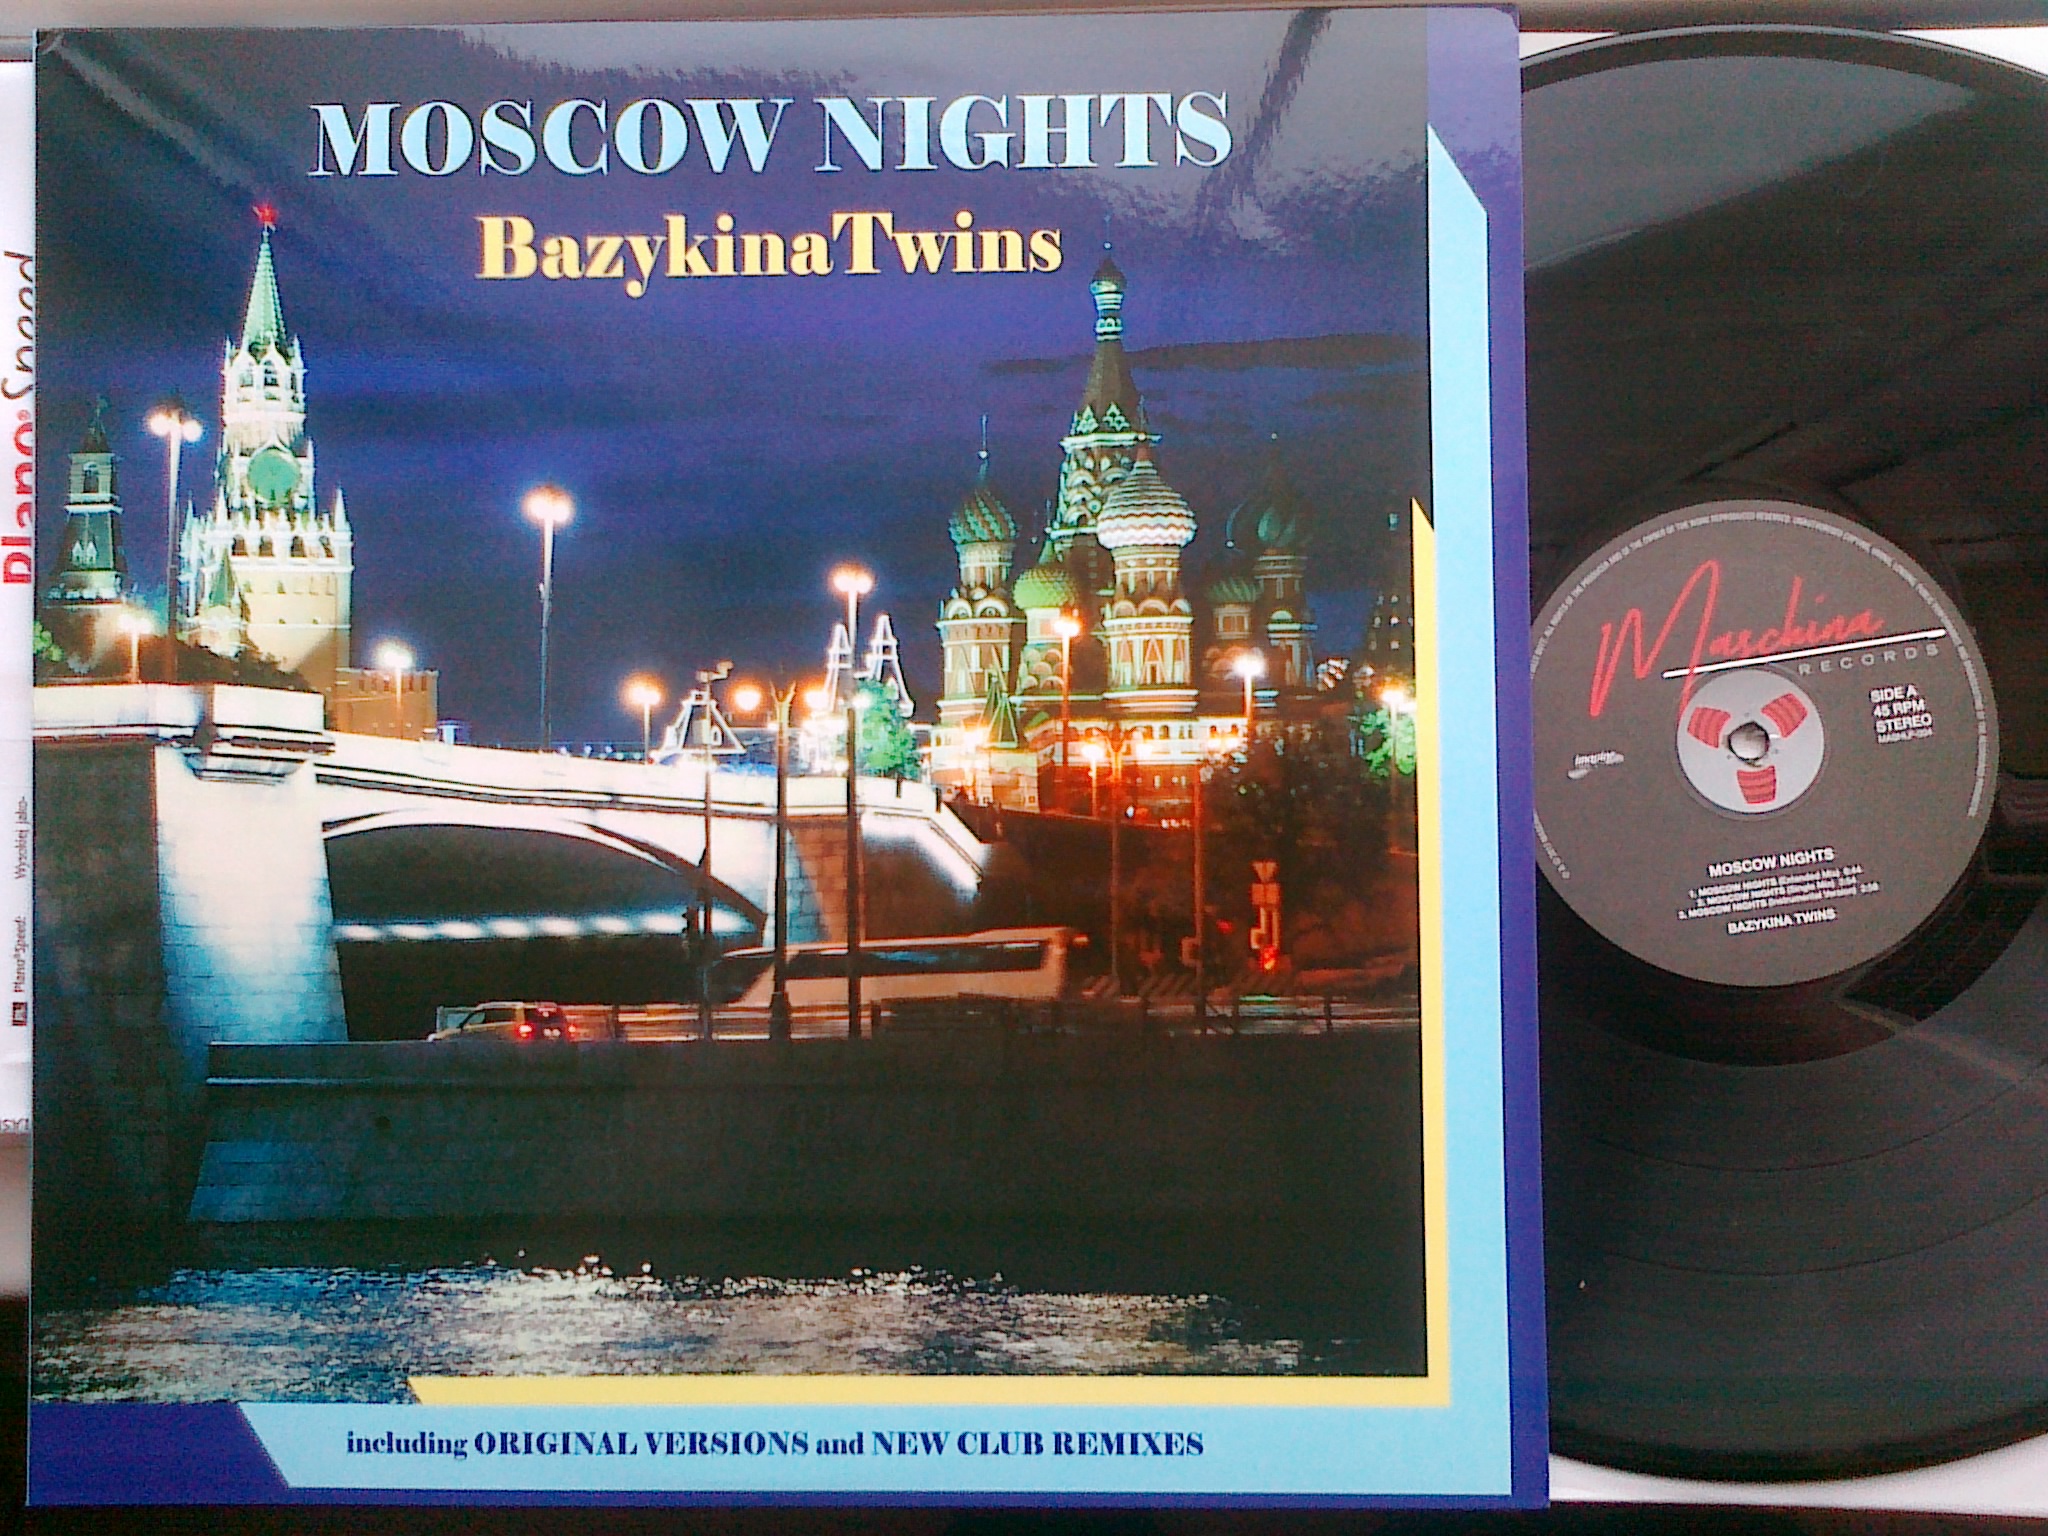 Bazykina Twins - Mscow Nights